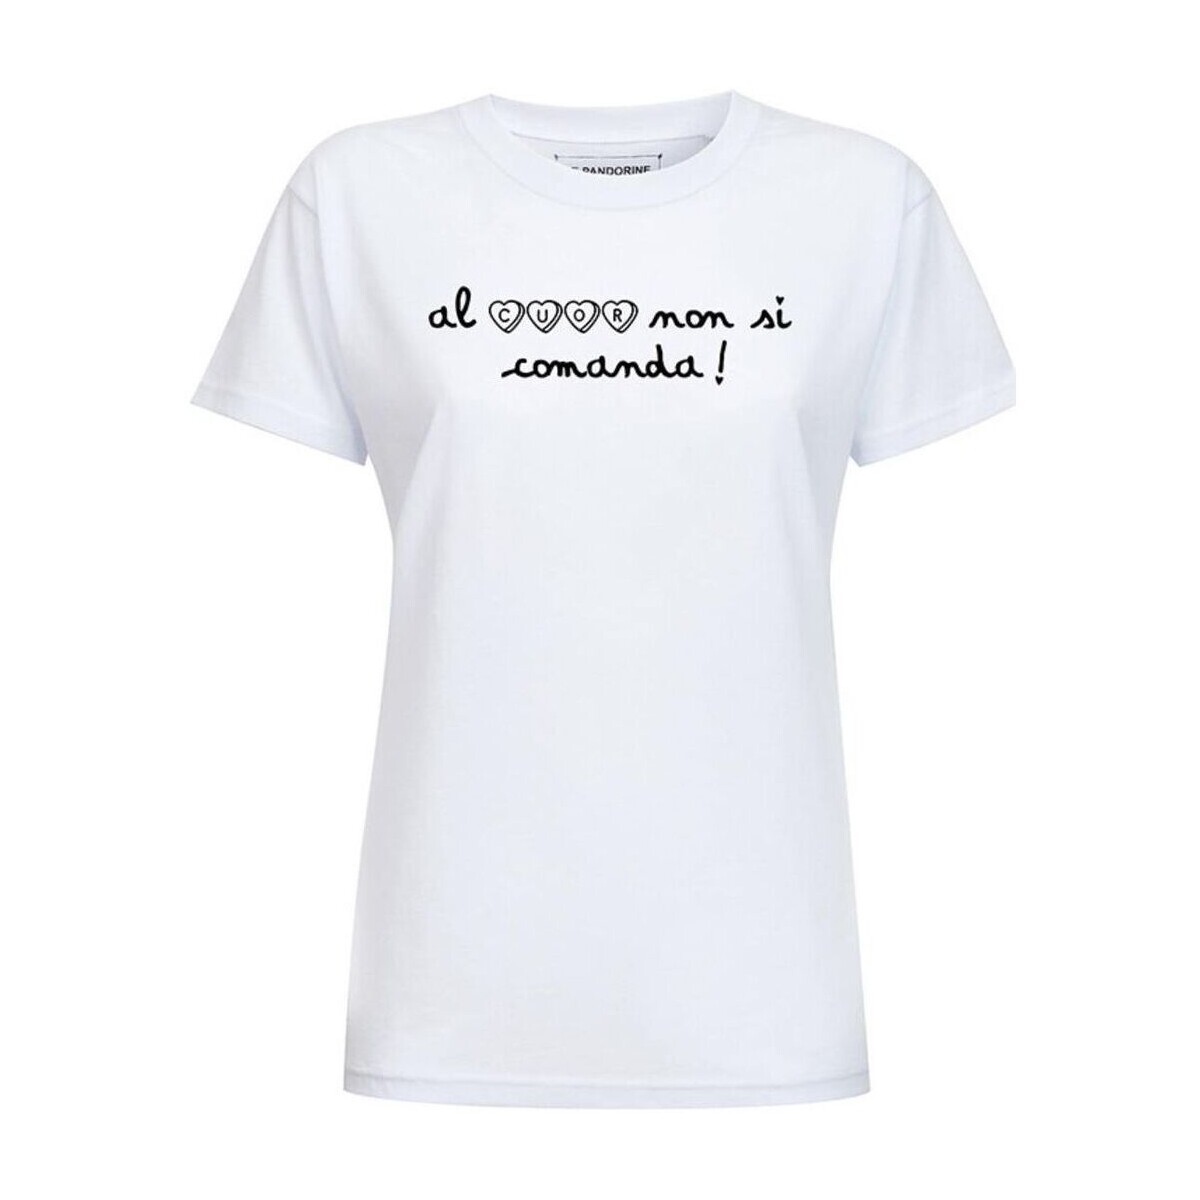 Abbigliamento Donna T-shirt maniche corte Le Pandorine  Altri